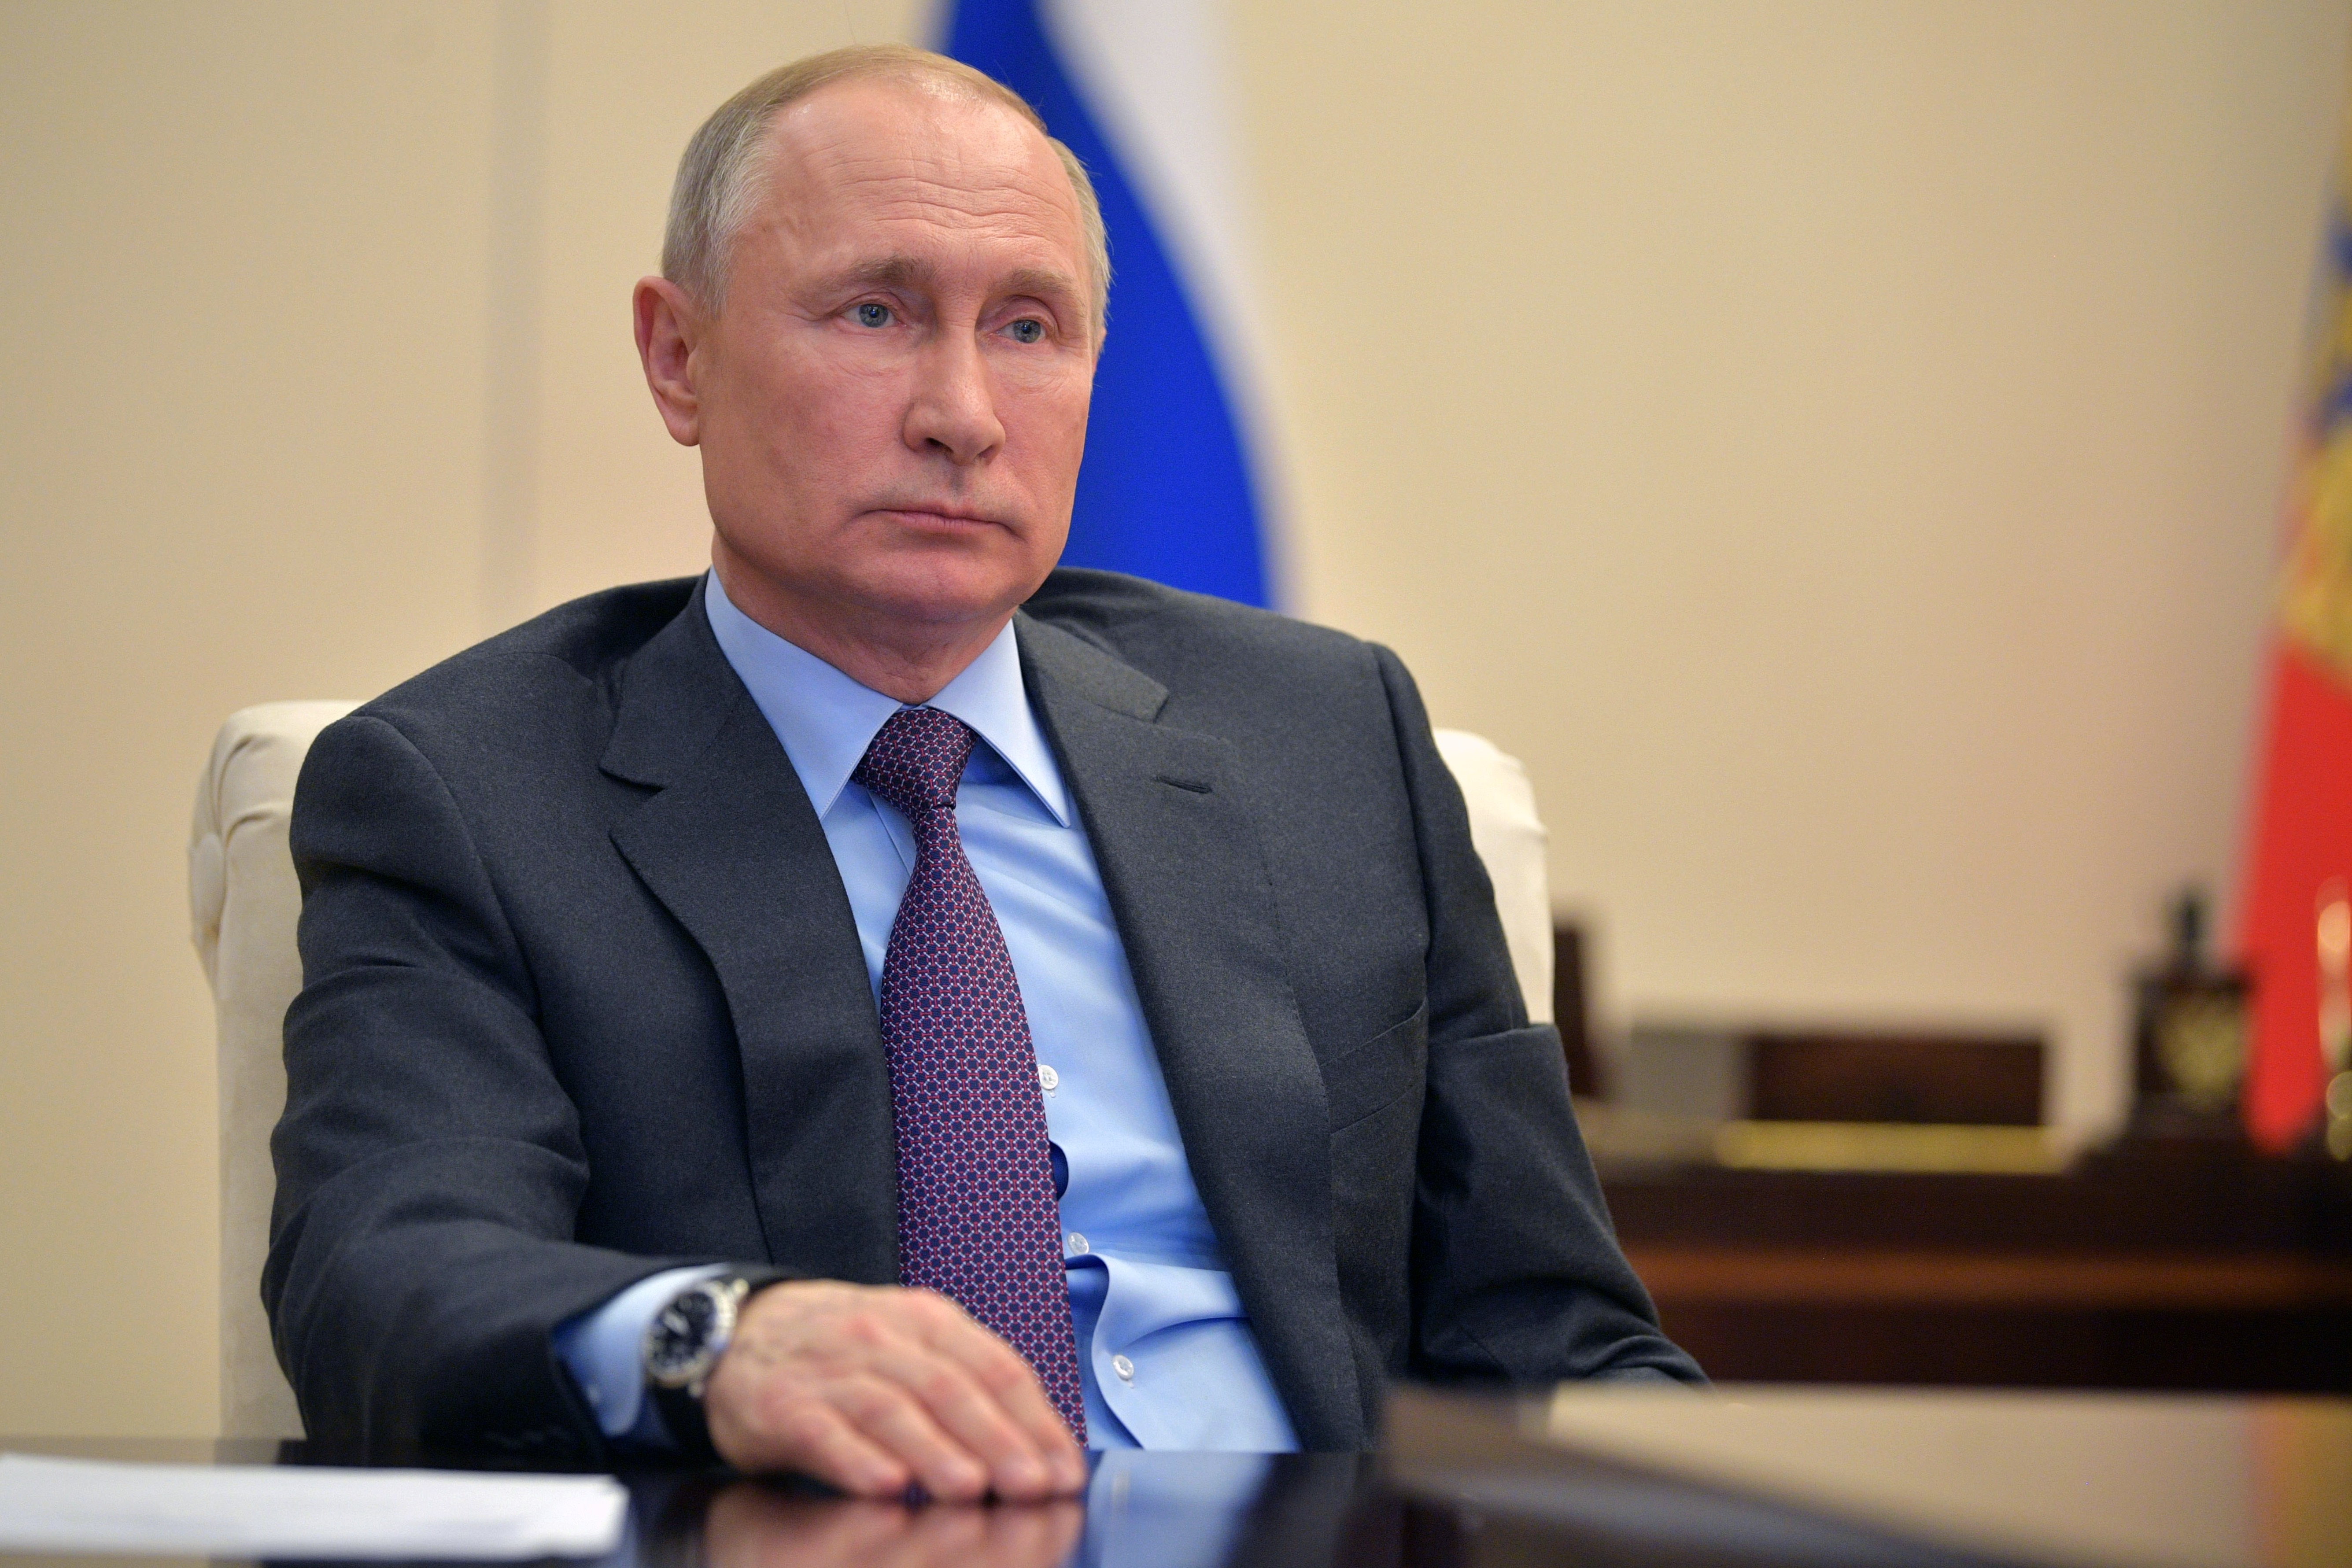 Путин: Россия выступает за неукоснительное соблюдение норм международного права